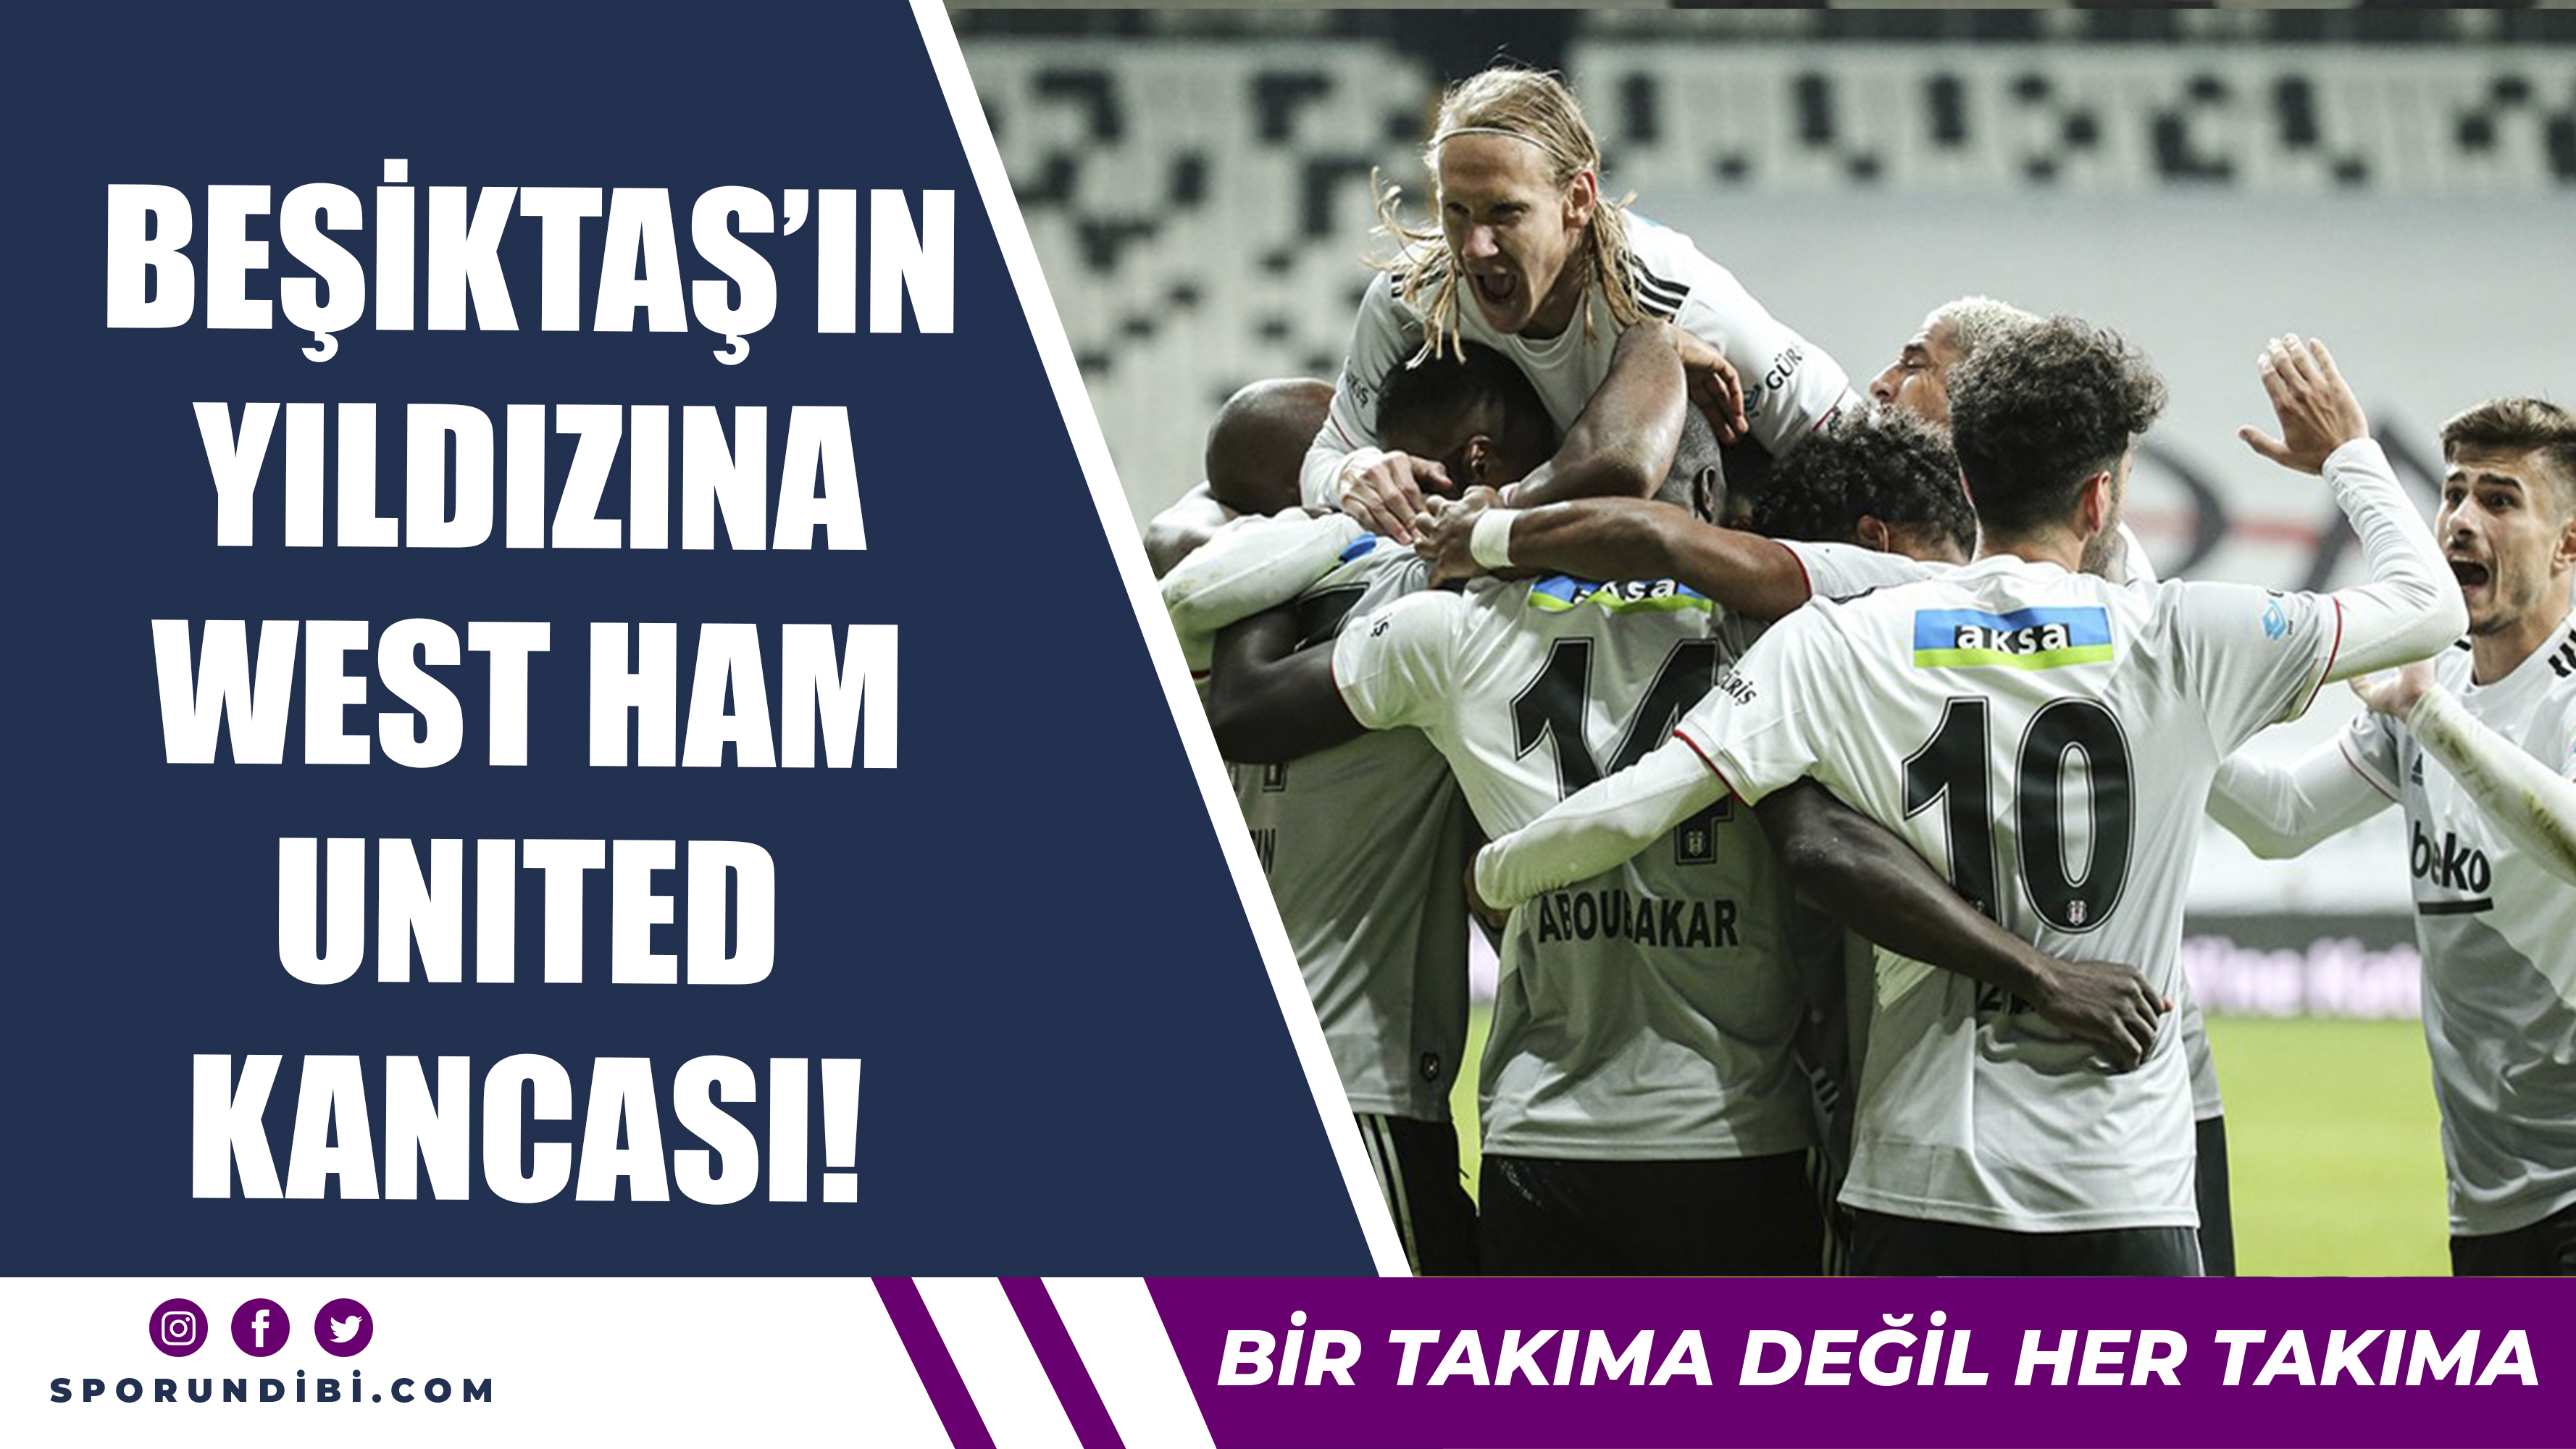 Beşiktaş'ın Yıldızına West Ham Kancası!